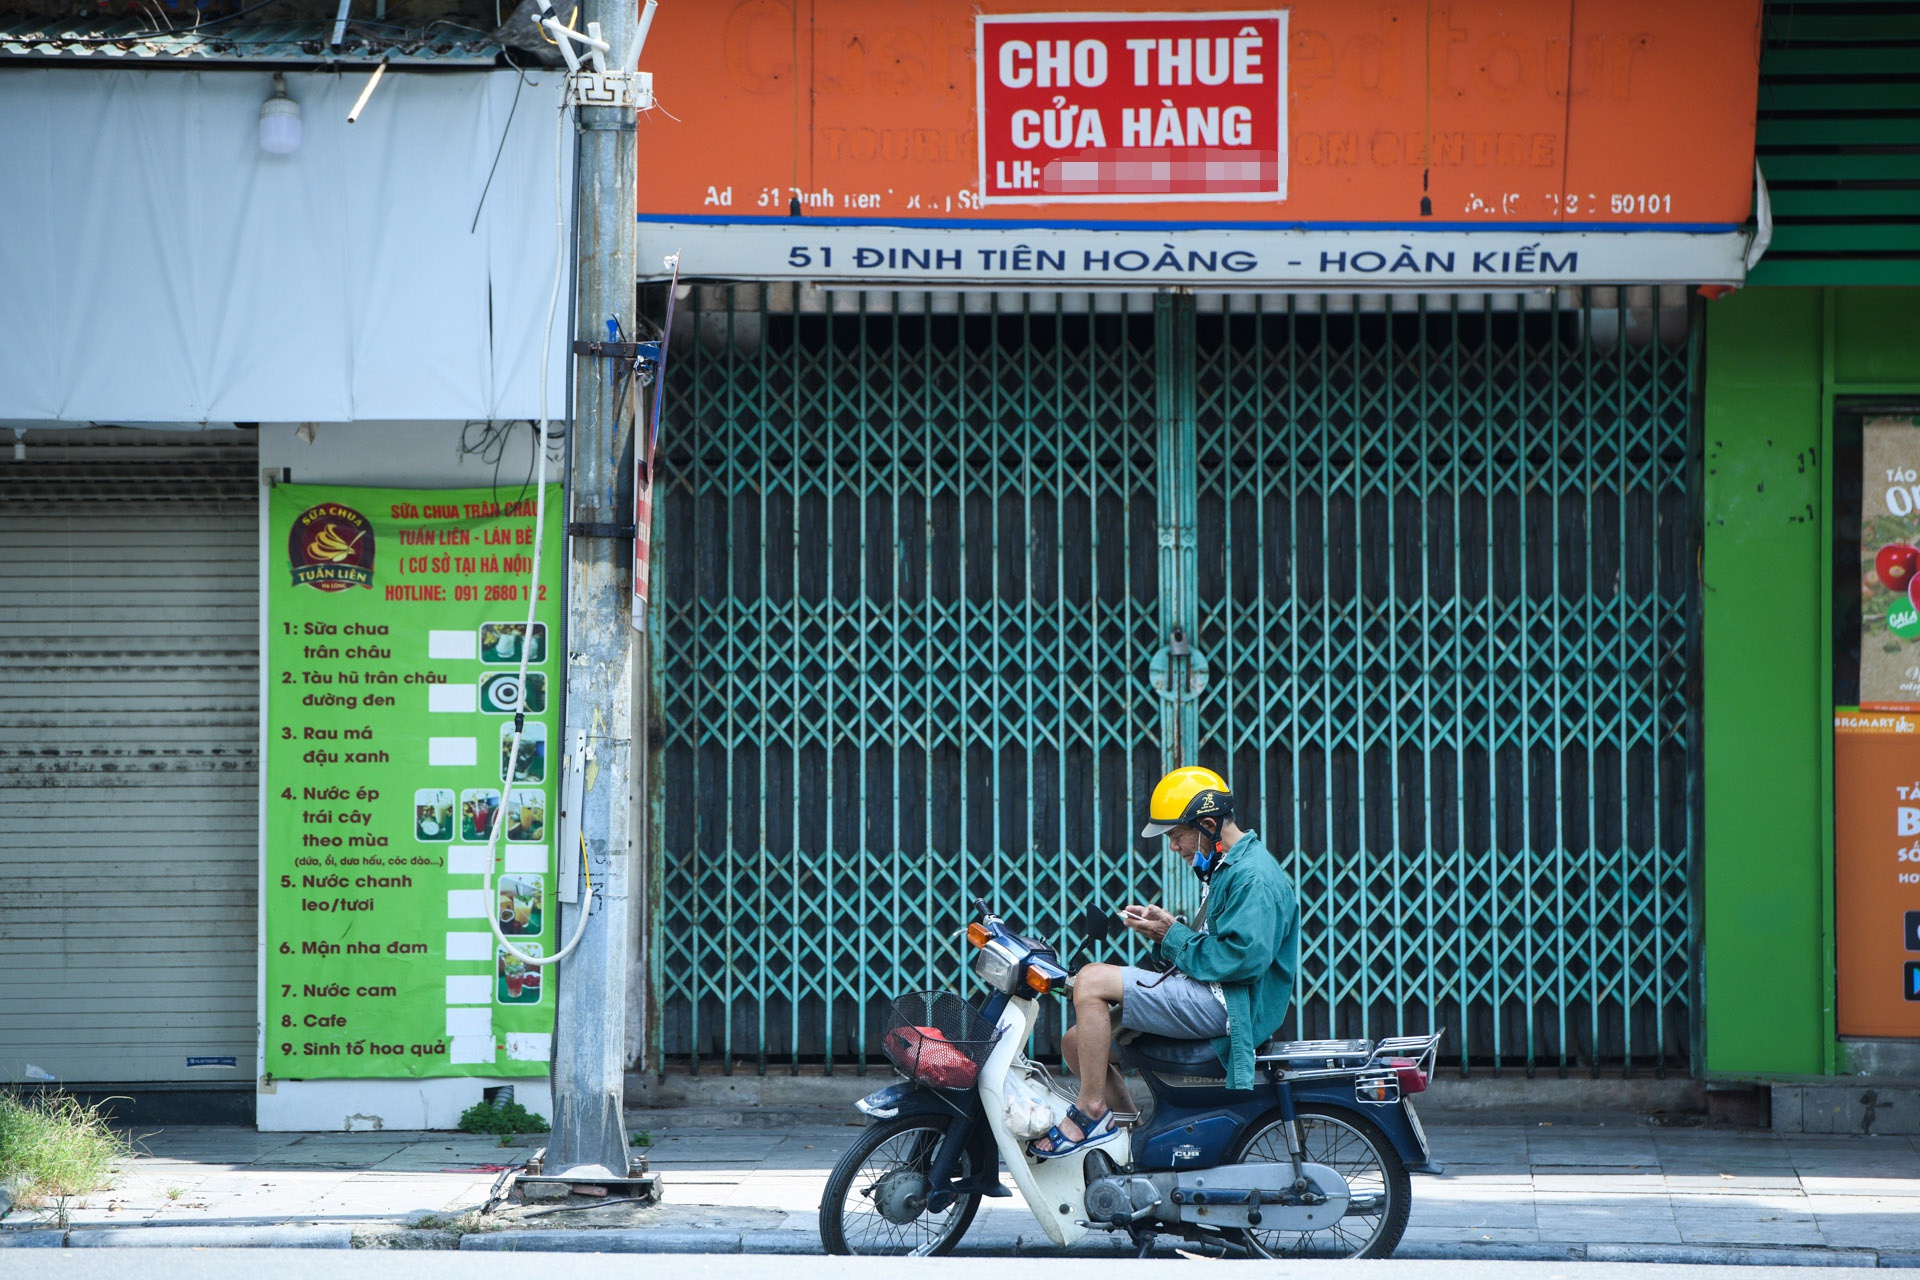 Hàng loạt nhà phố cổ Hà Nội treo biển cho thuê, bán nhà - Ảnh 9.